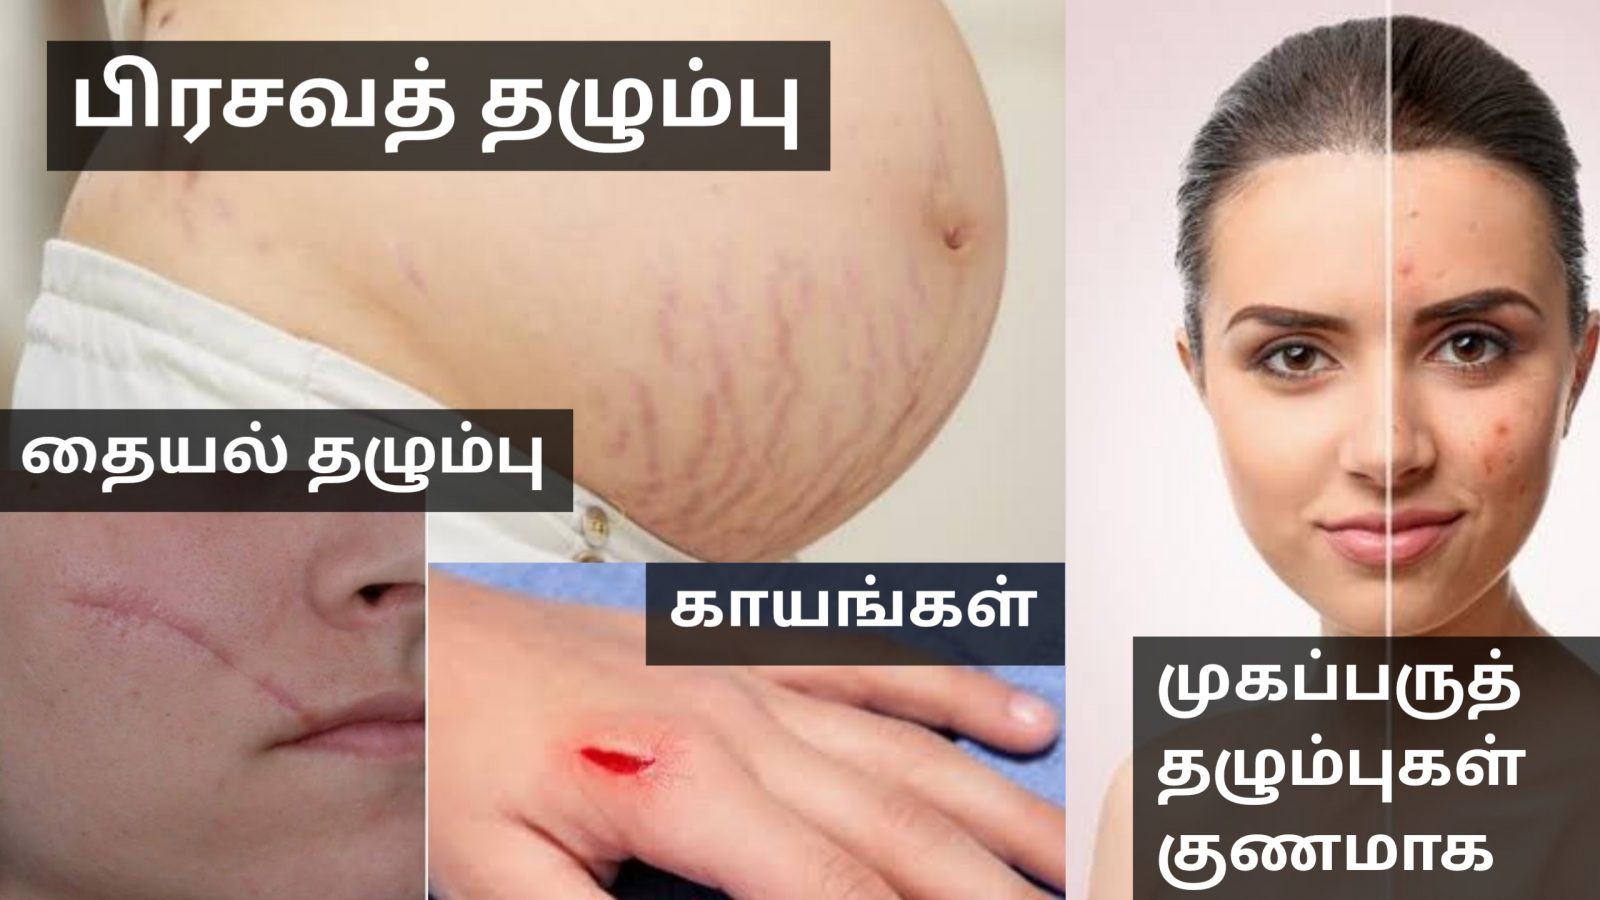 உடலில் உள்ள தழும்புகள் முழுவதும் மறைய வீட்டு வைத்தியம் | Home remedy for remove acne scars marks